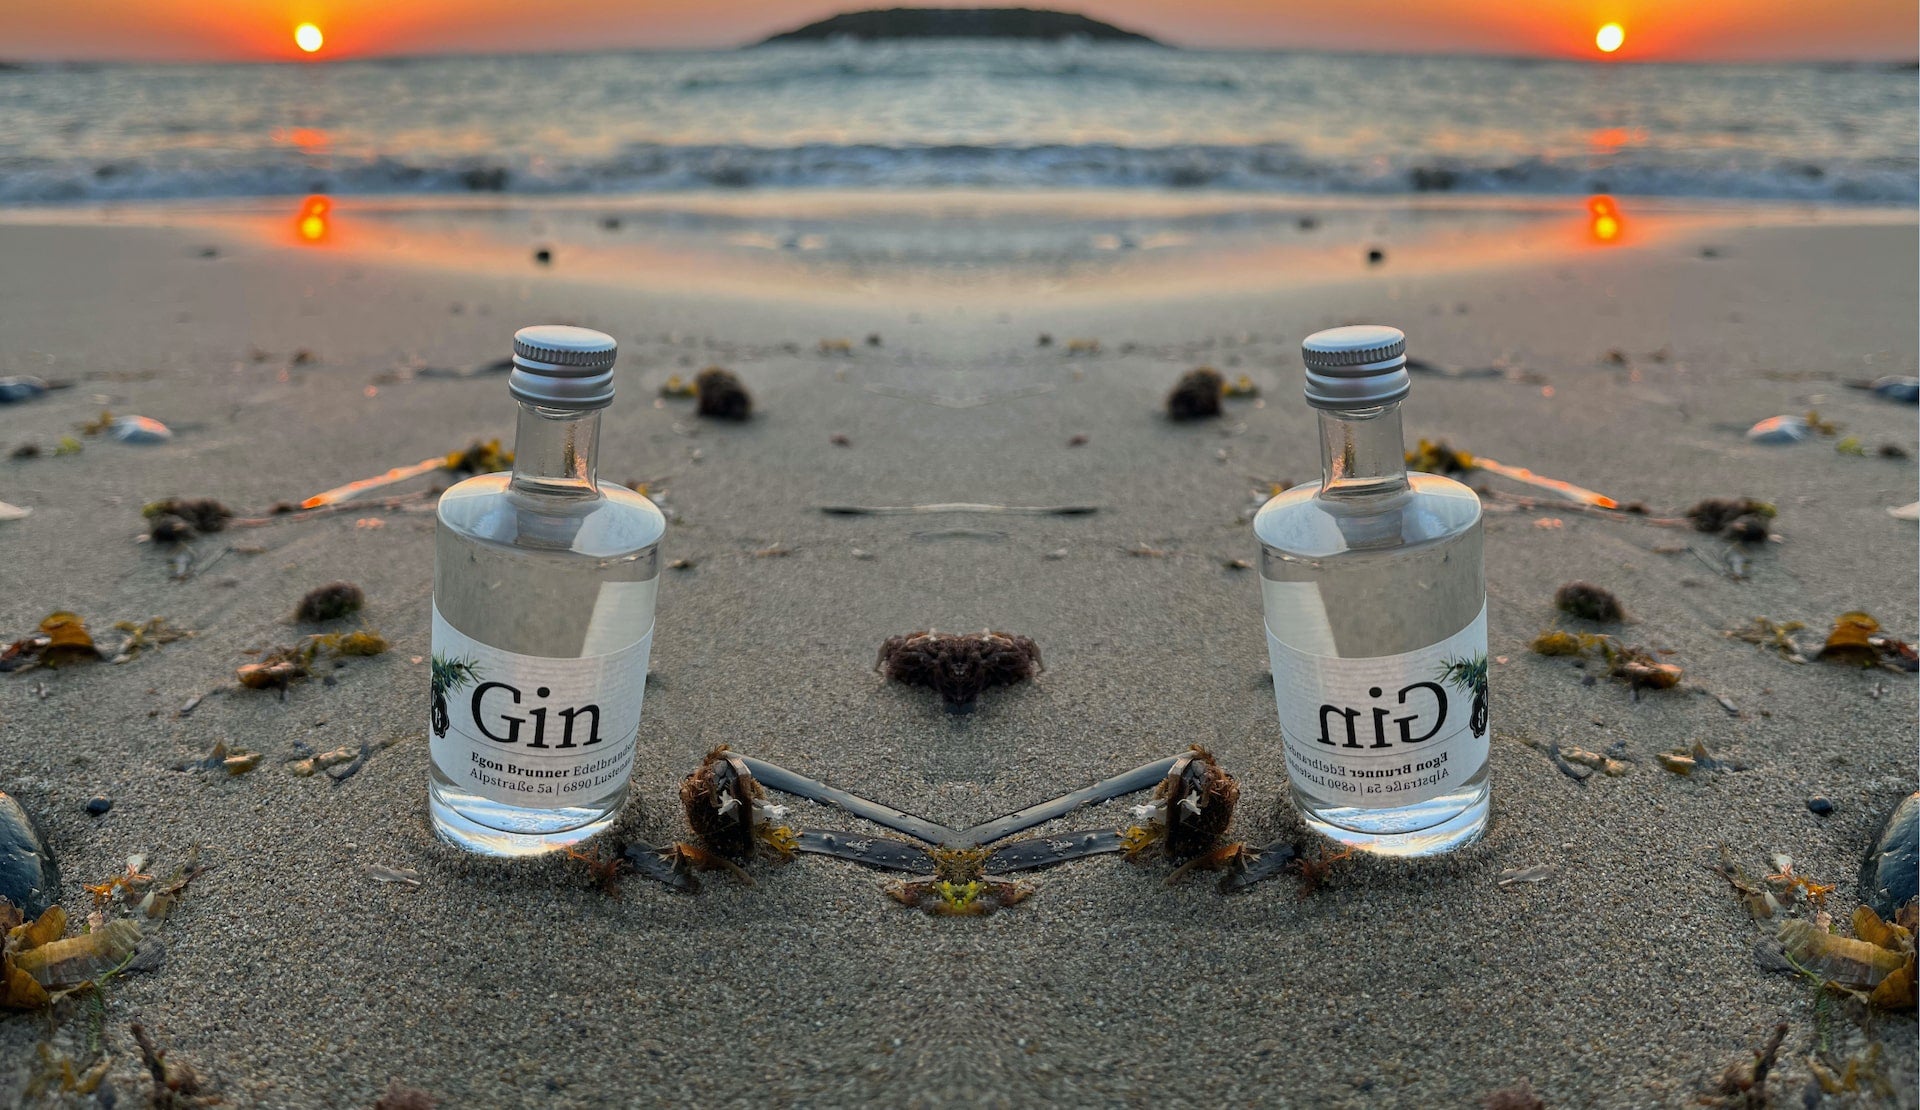 50ml Miniflaschen mit Gin der Destillerie Brunner im Sand am Meer von Kreta während eines Sonnenuntergangs.